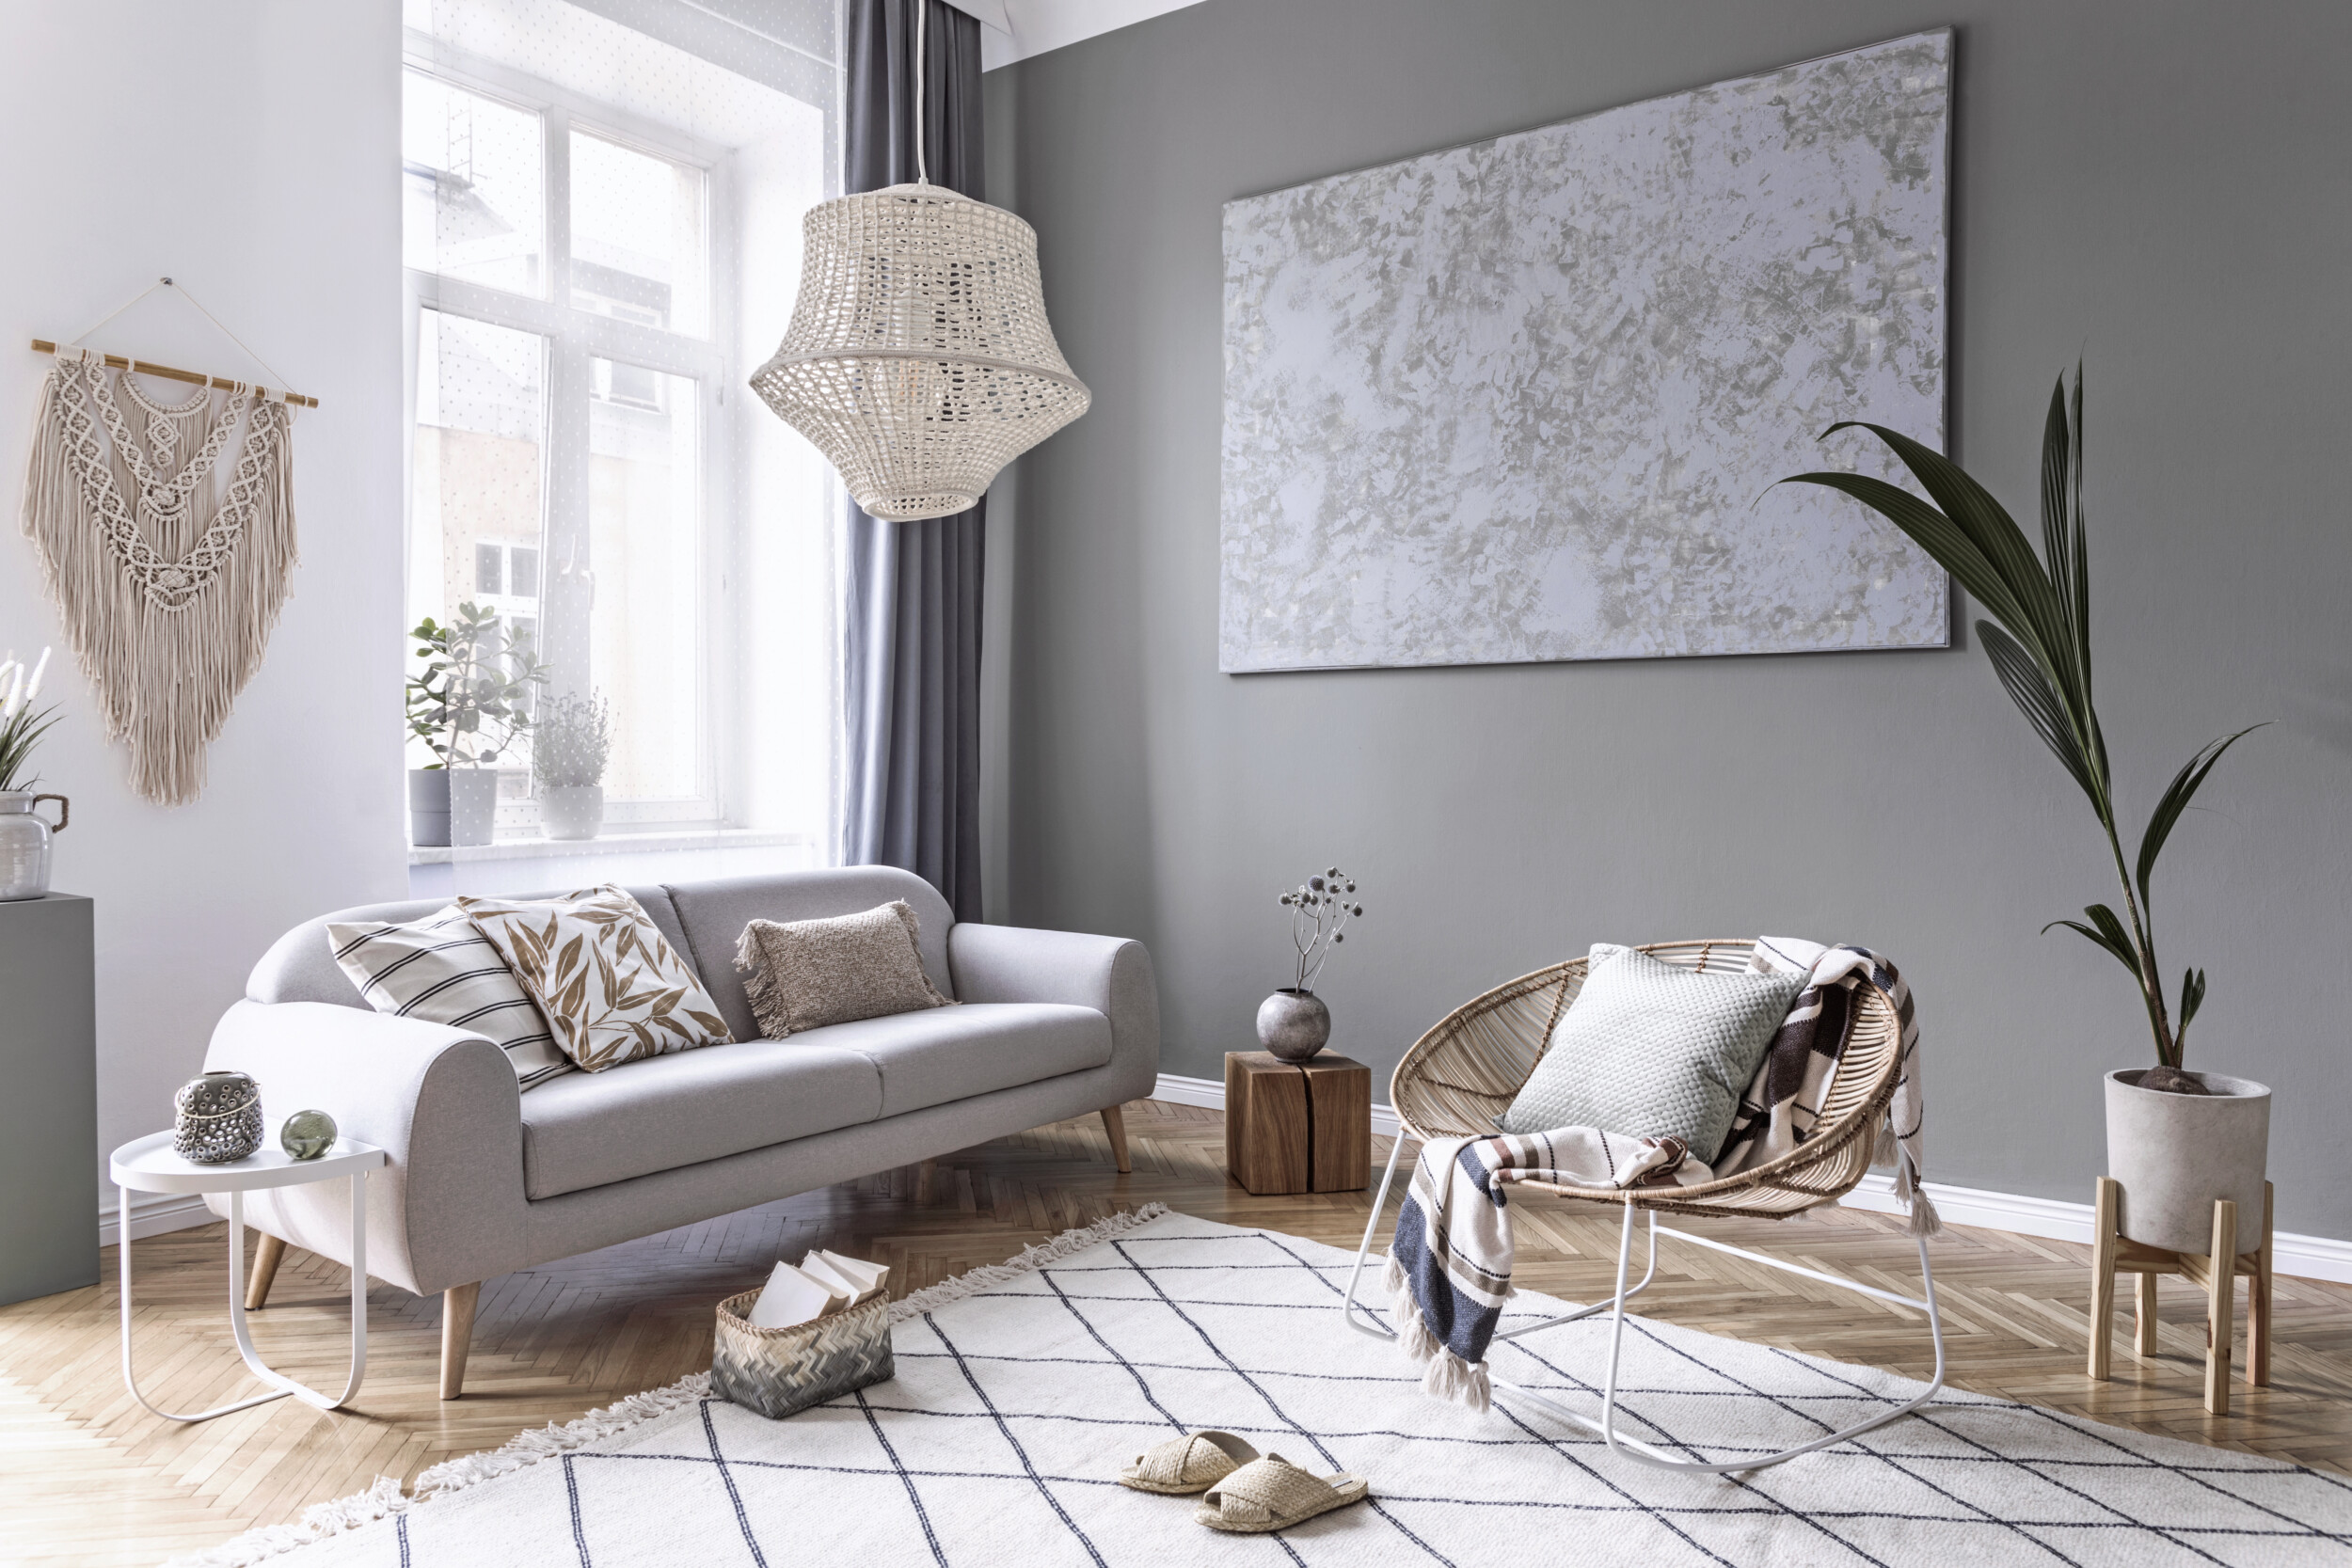 trang trí phòng khách nhỏ bằng sofa màu trắng, chậu cây